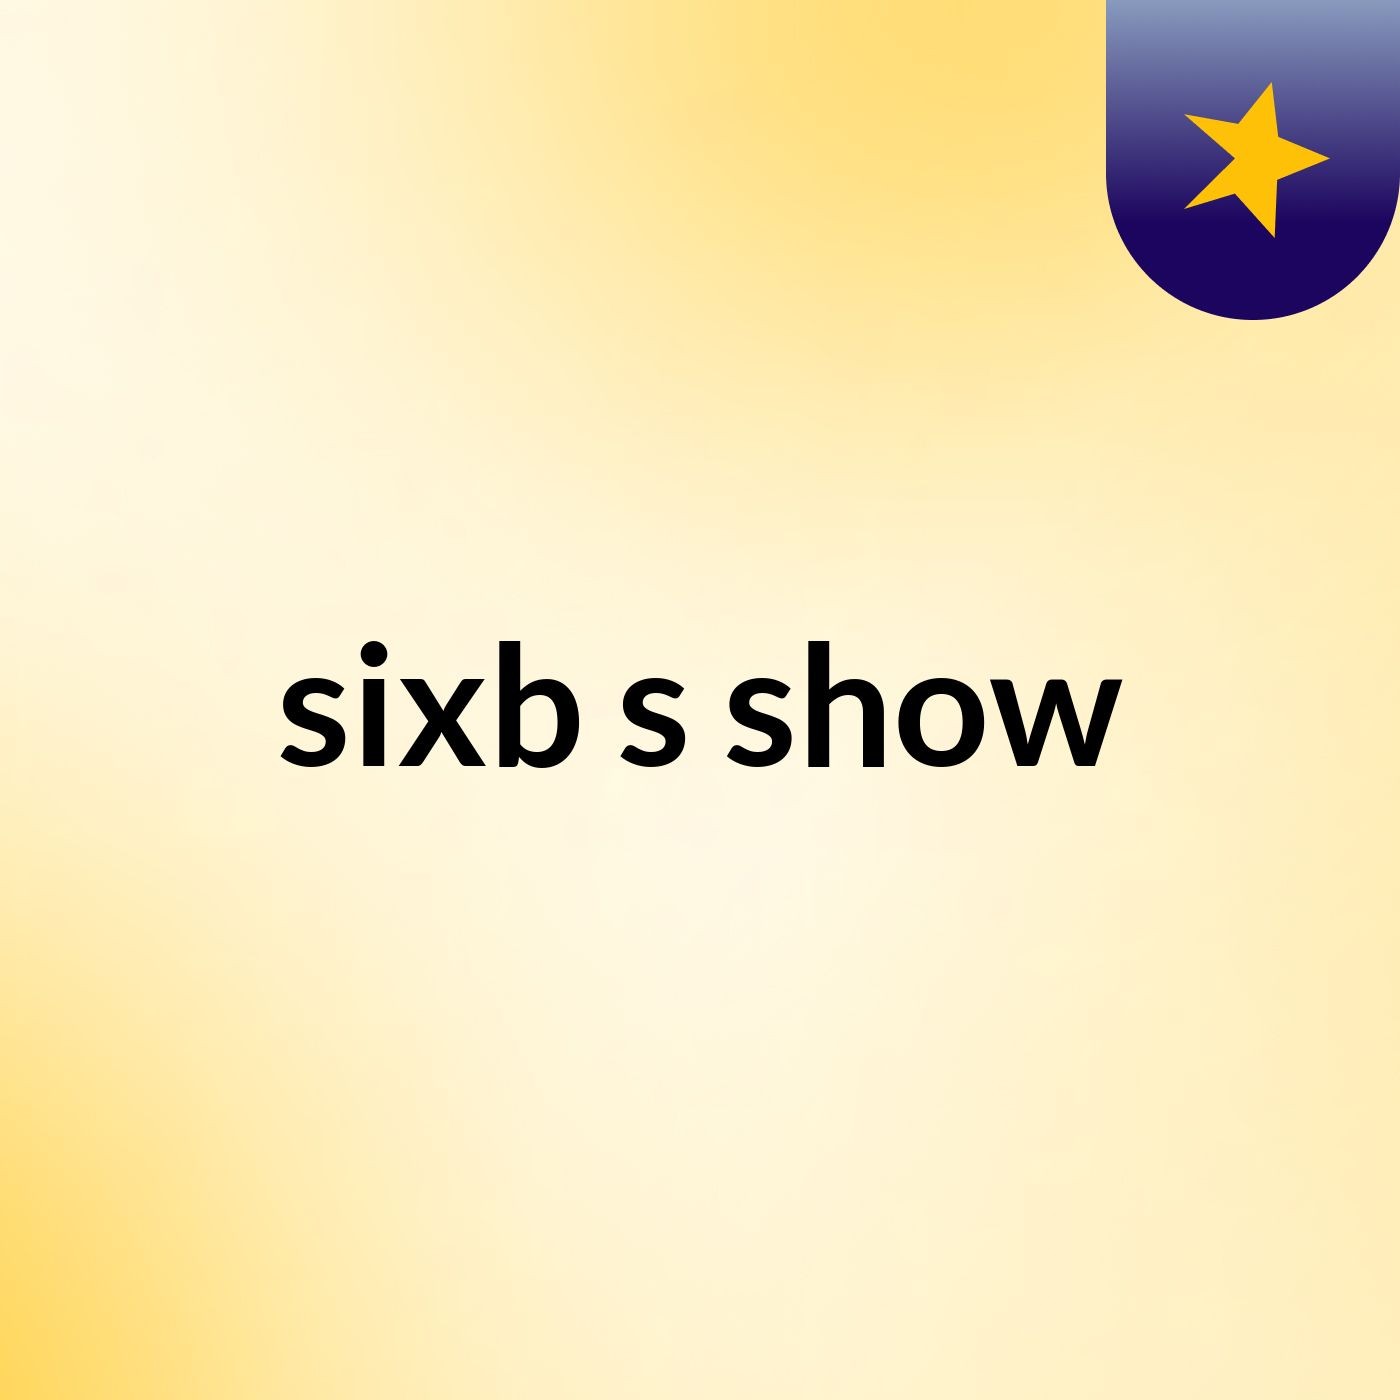 sixb's show